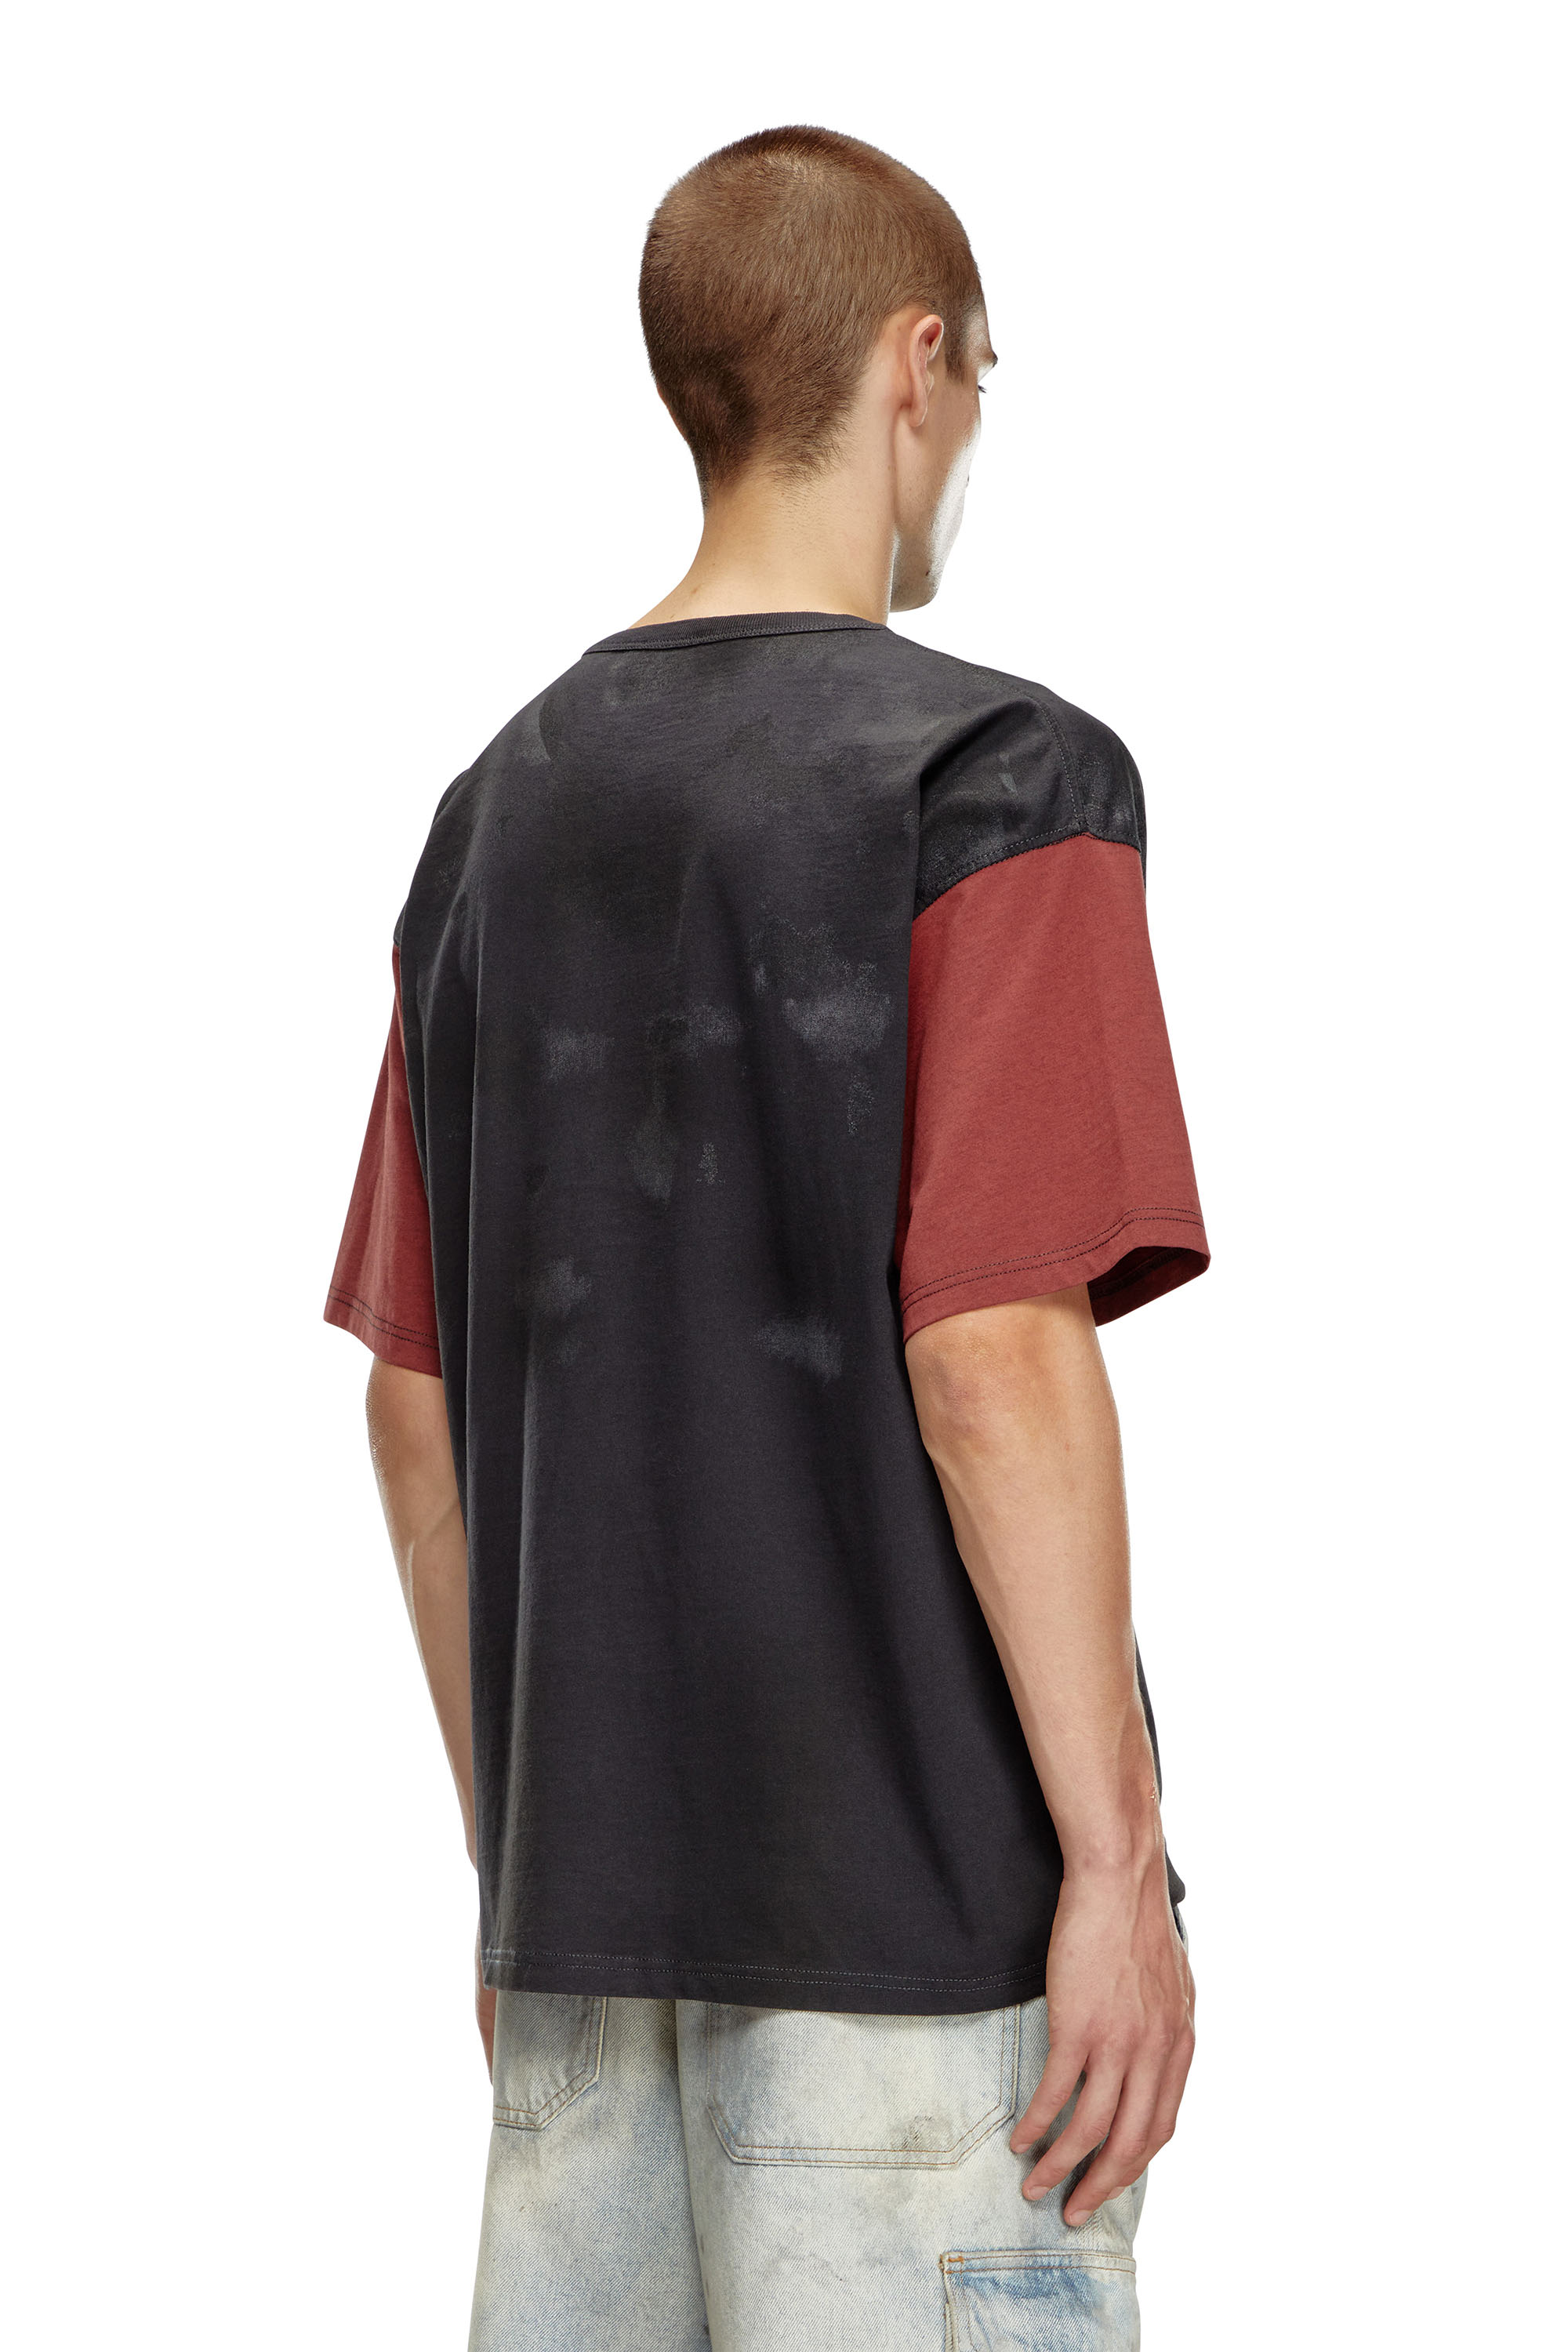 Diesel - T-BOXT-Q4, Hombre Camiseta en bloques de color con efectos de suciedad in Multicolor - Image 2